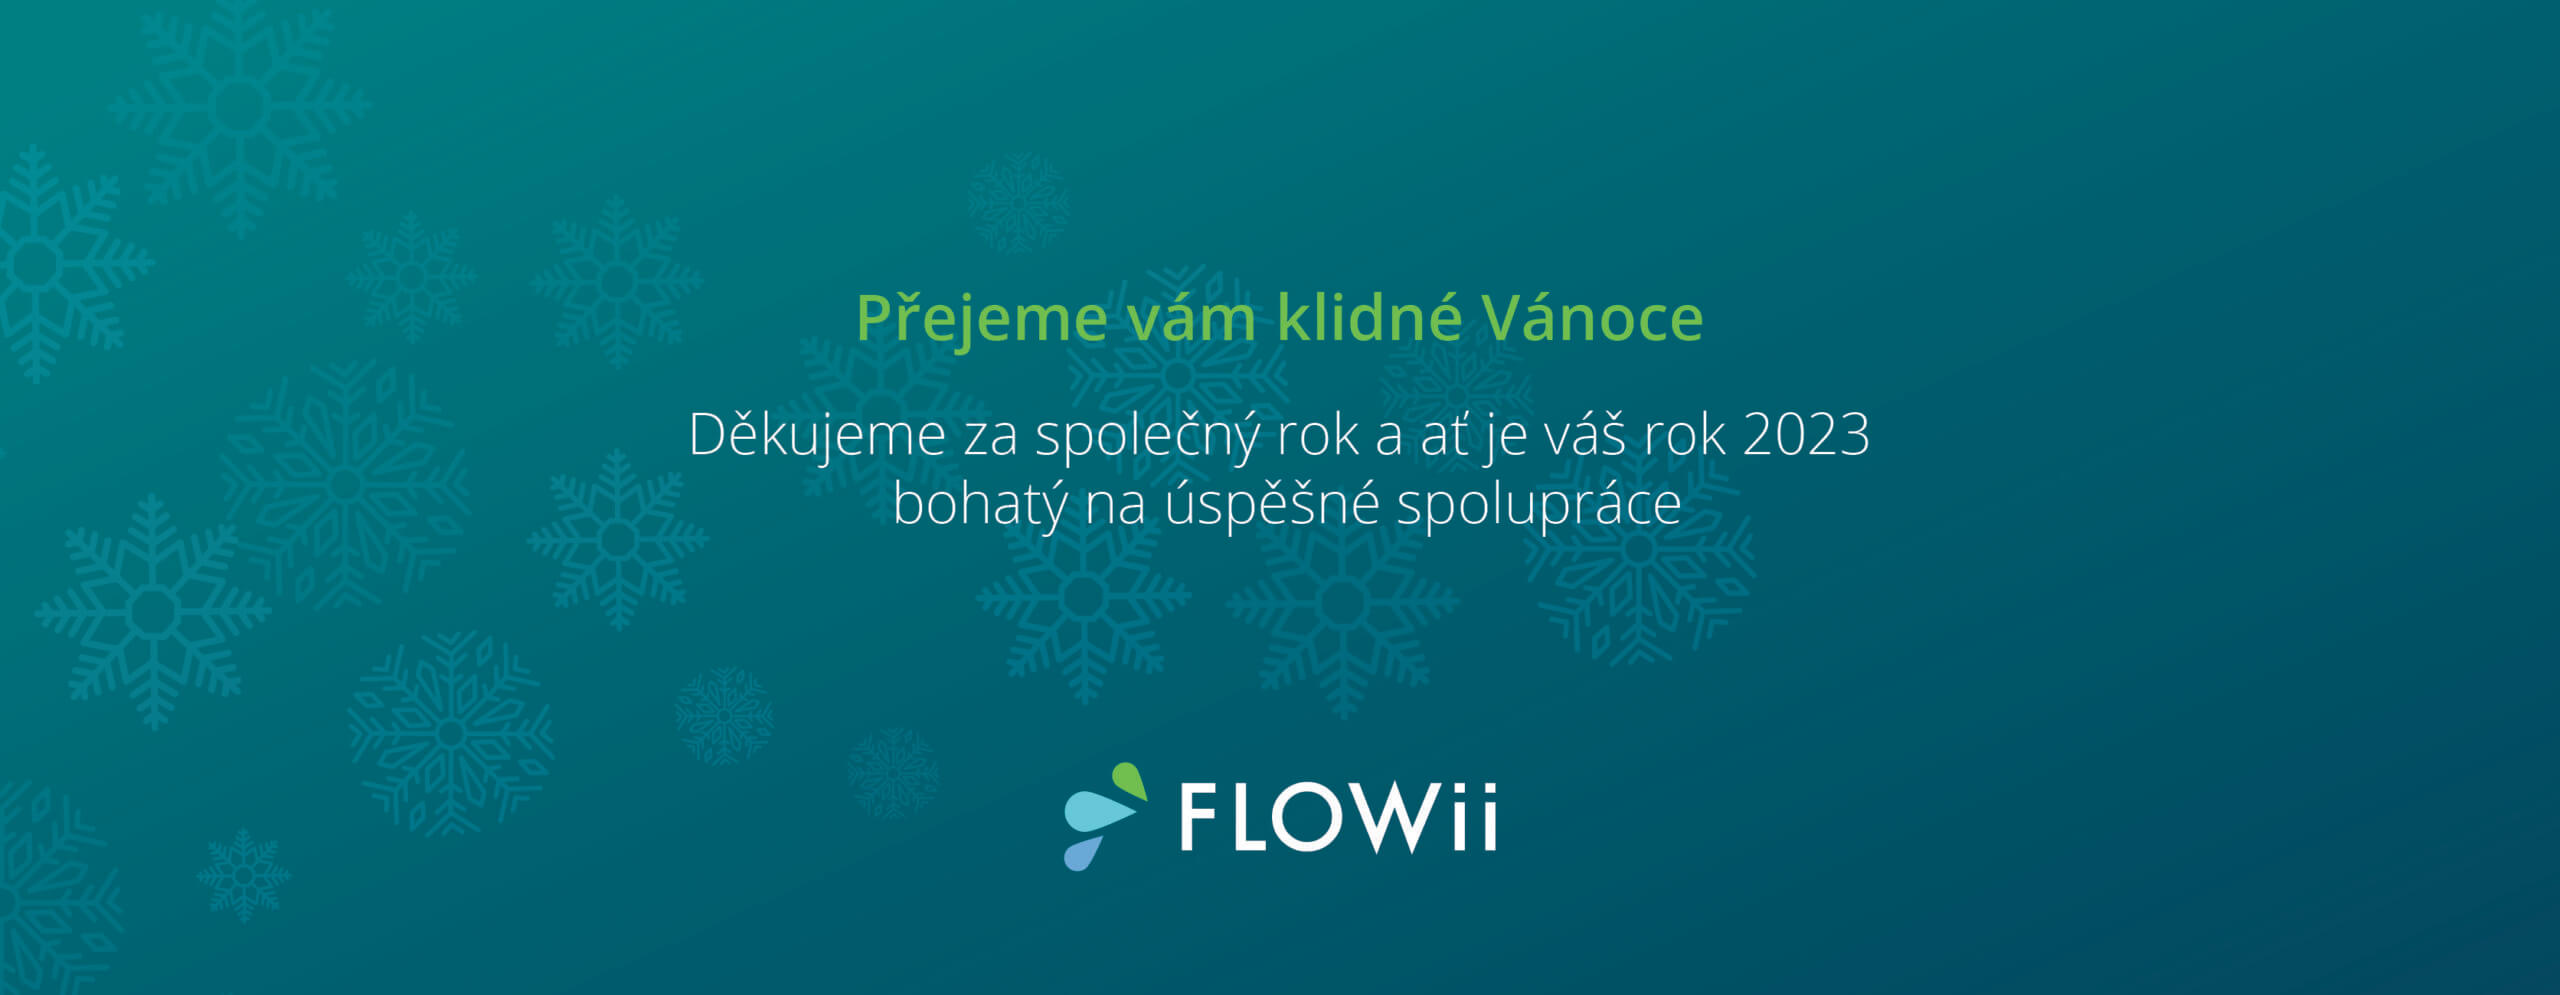 FLOWii vám děkuje za spolupráci a přeje klidné Vánoce